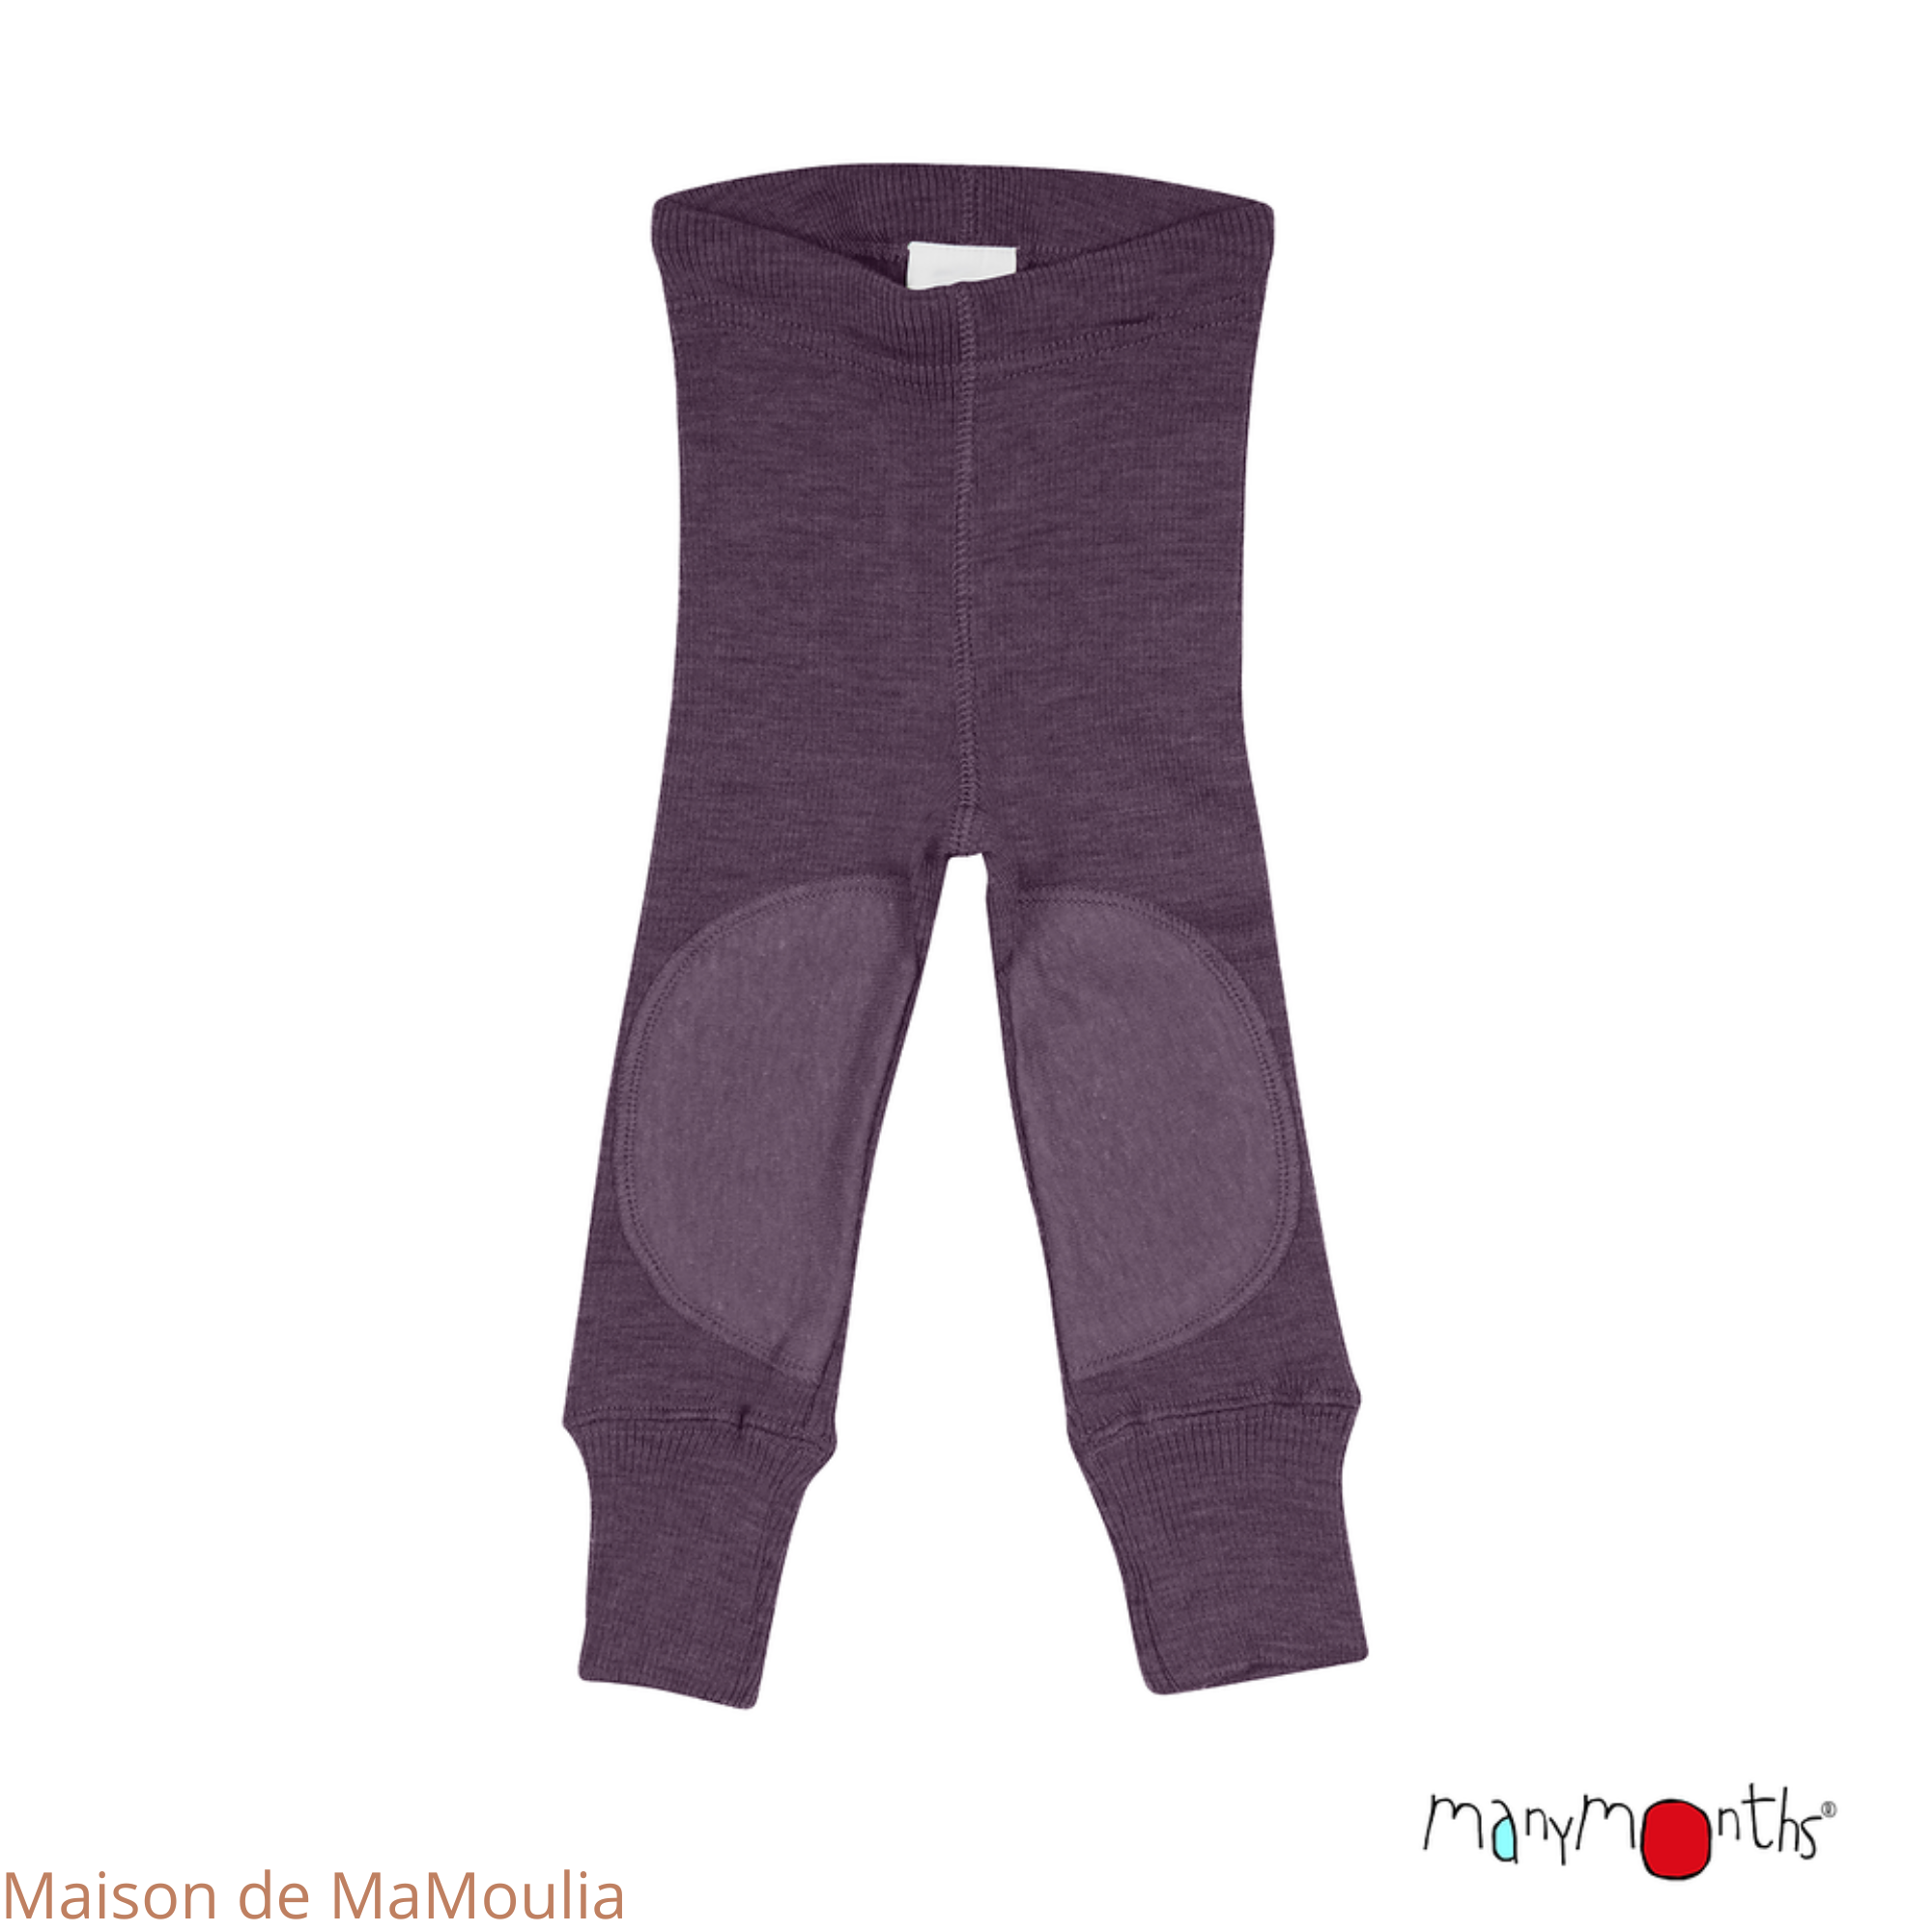 manymonths-legging-ajustable-genouilleres-patches-evolutif-enfant-laine-merinos-maison-de-mamoulia-dusty-grape-violet